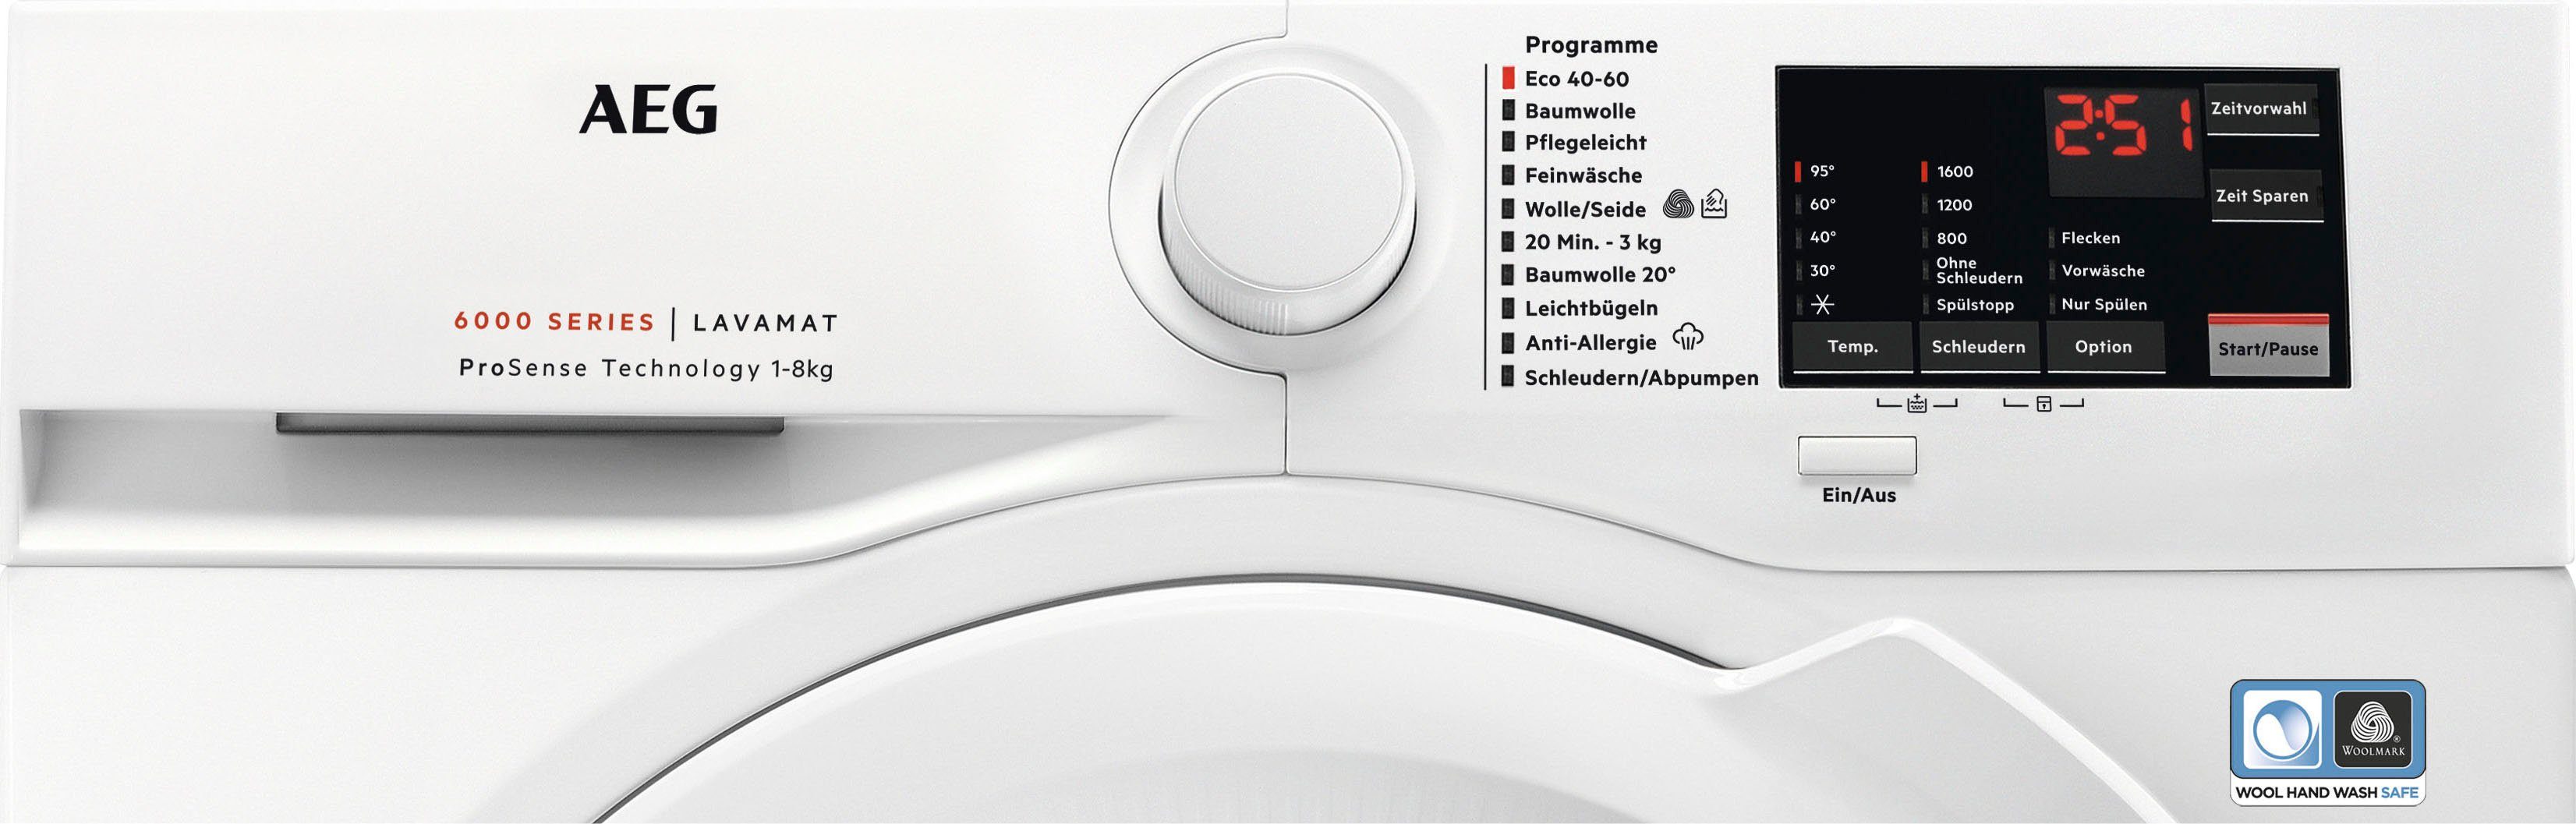 ProSense-Technologie Anti-Allergie Dampf Programm U/min, 8 Waschmaschine 6000 mit kg, Hygiene-/ AEG Serie mit 1600 L6FA68FL,